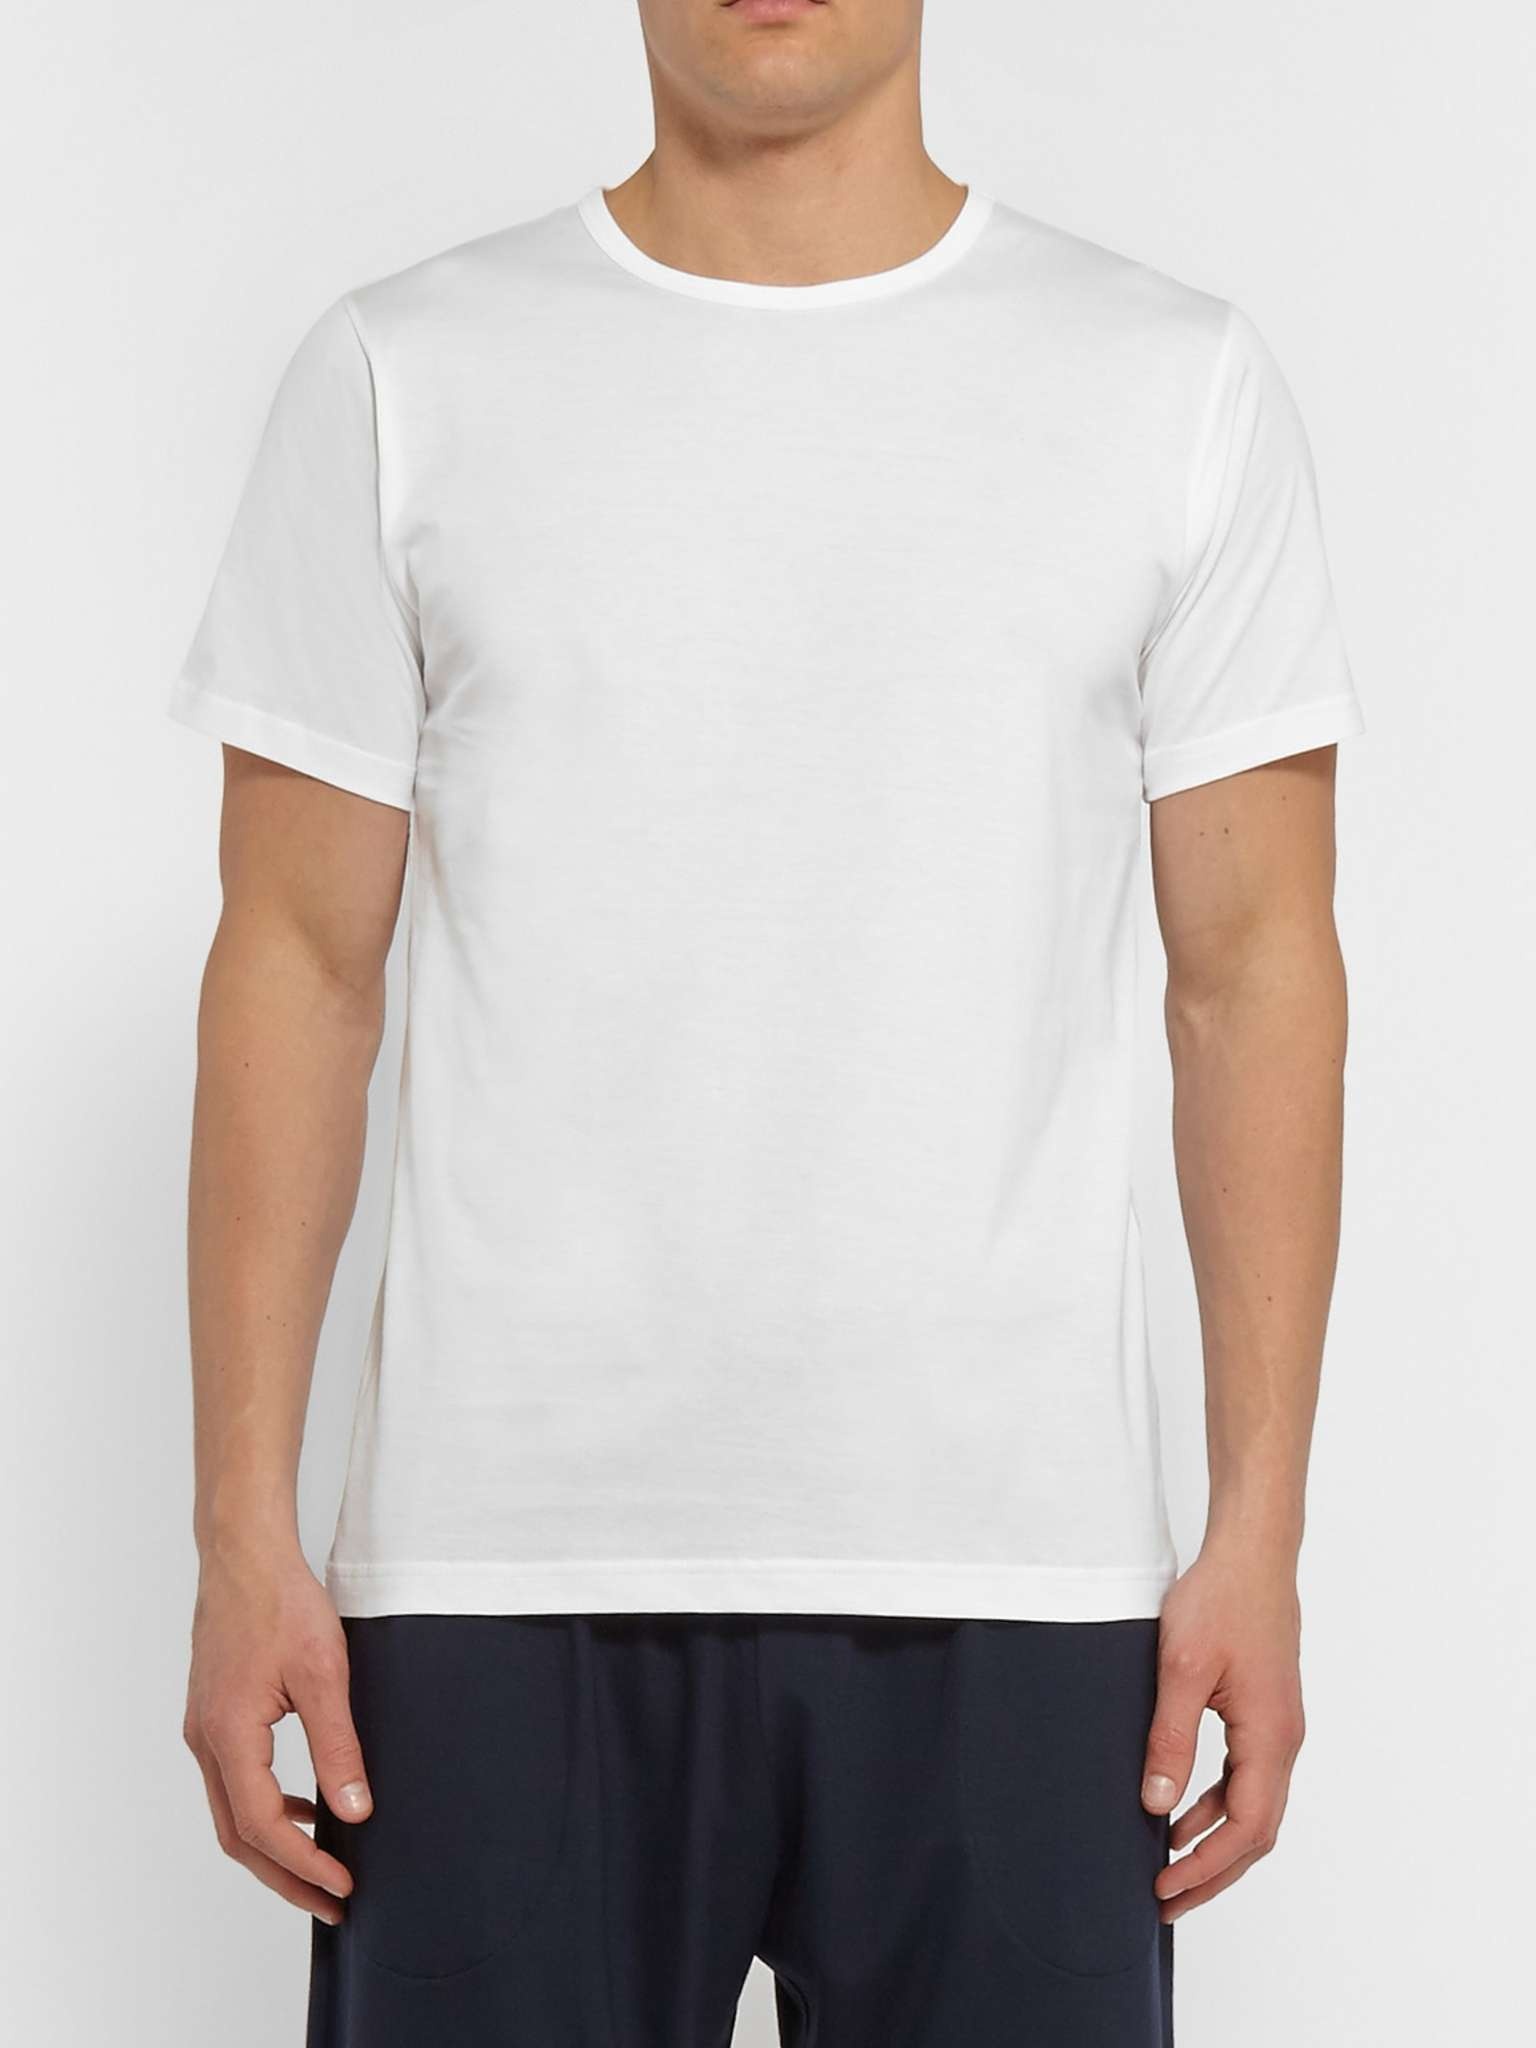 Superfine Cotton Underwear T-Shirt - 3